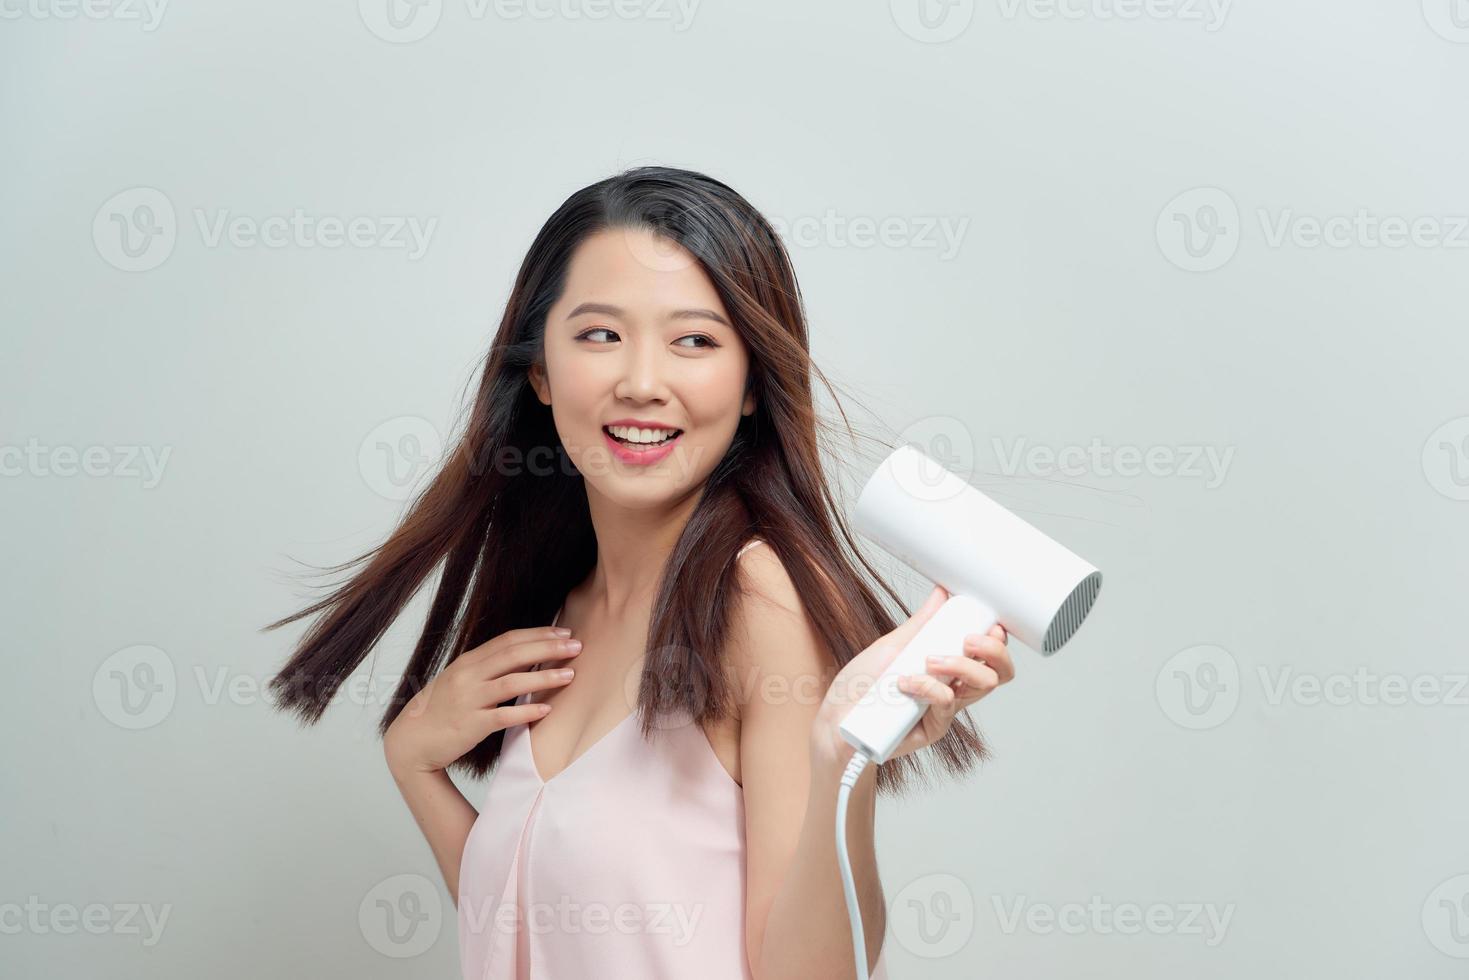 retrato de mujer joven feliz secado con secador foto